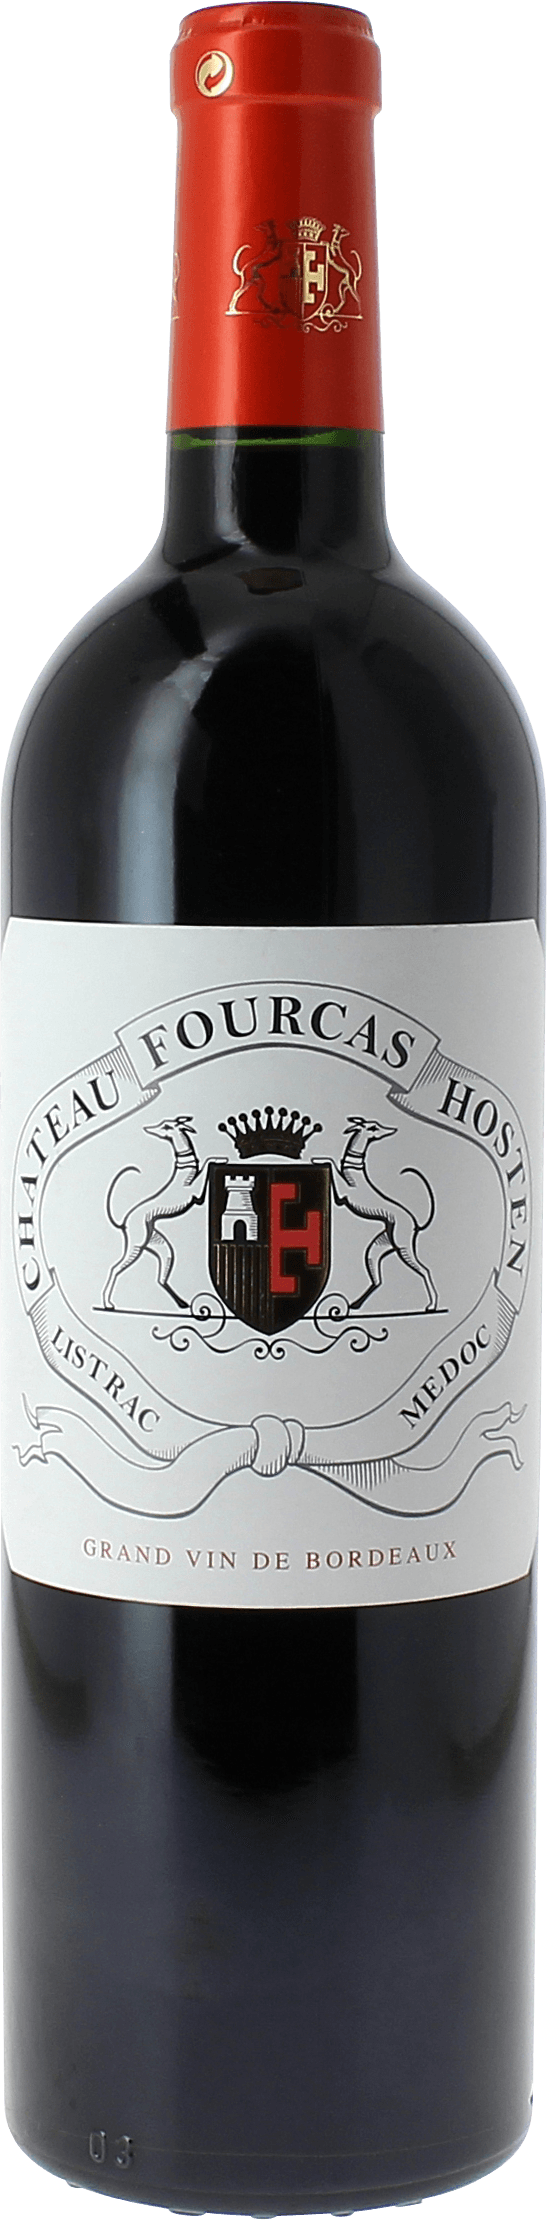 Fourcas hosten 2015 Cru Bourgeois Suprieur Listrac Mdoc, Slection Bordeaux Rouge